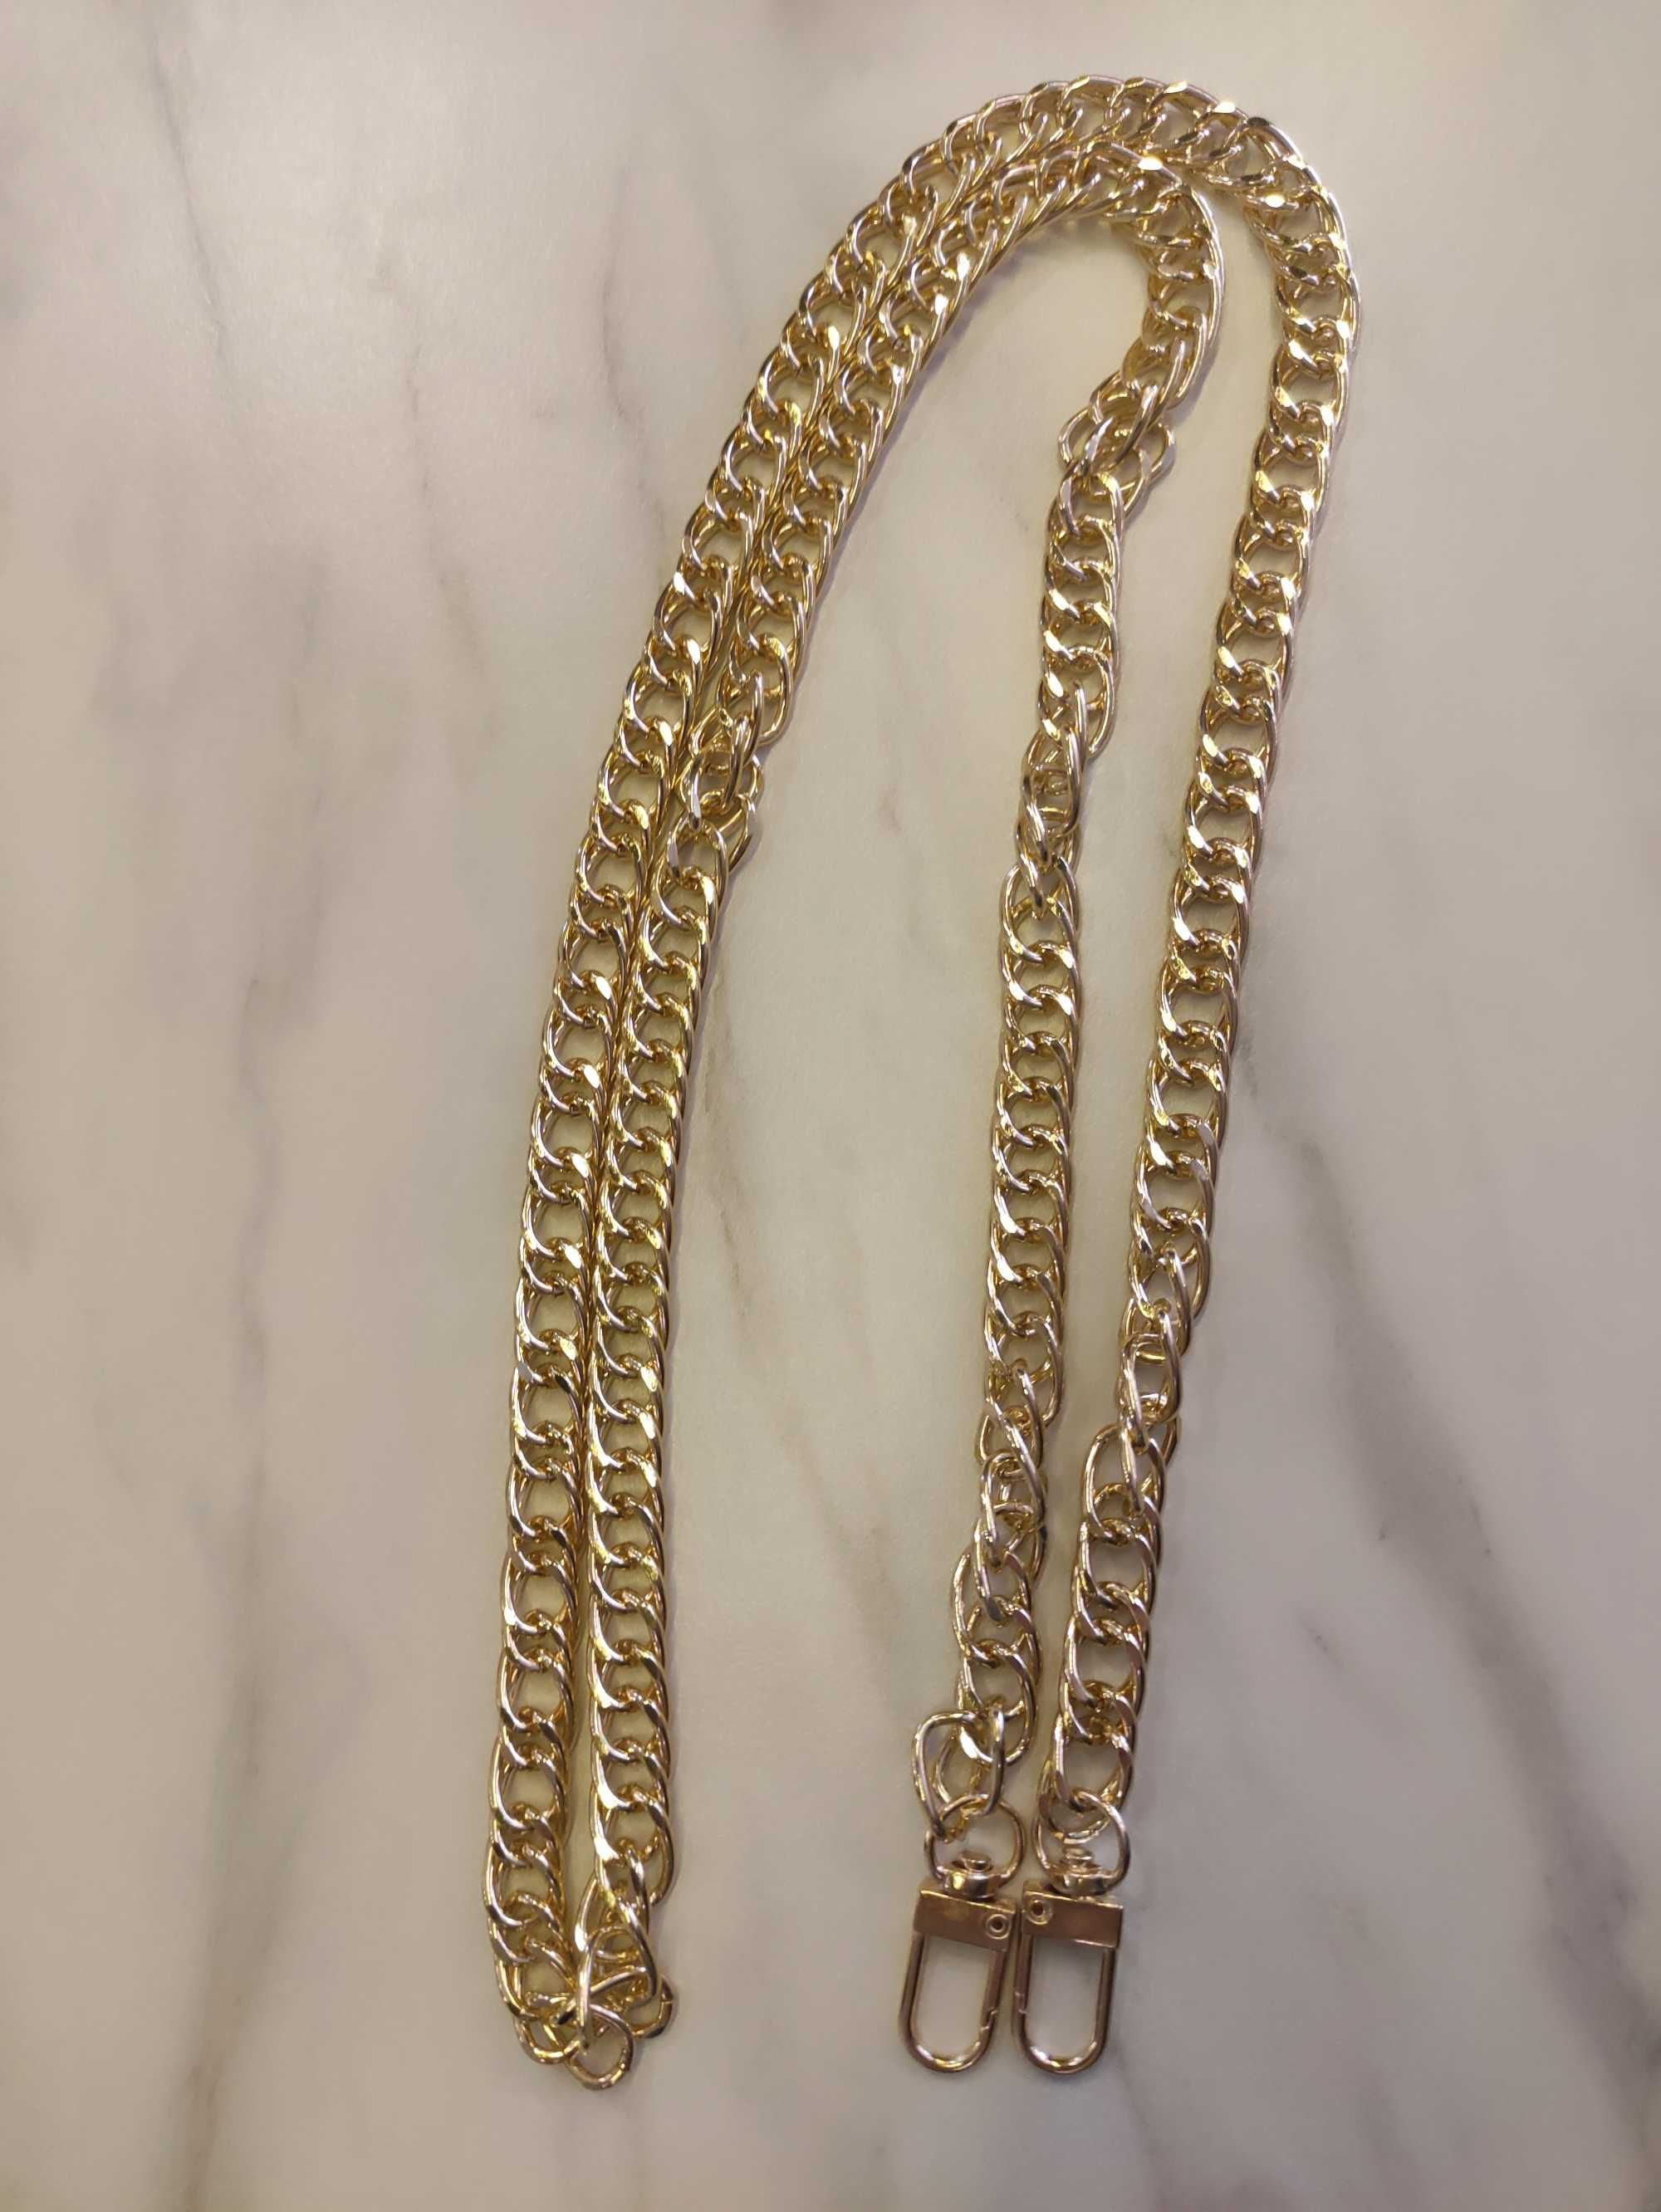 Pasek do torebki złoty łańcuszek długość ok 110 cm